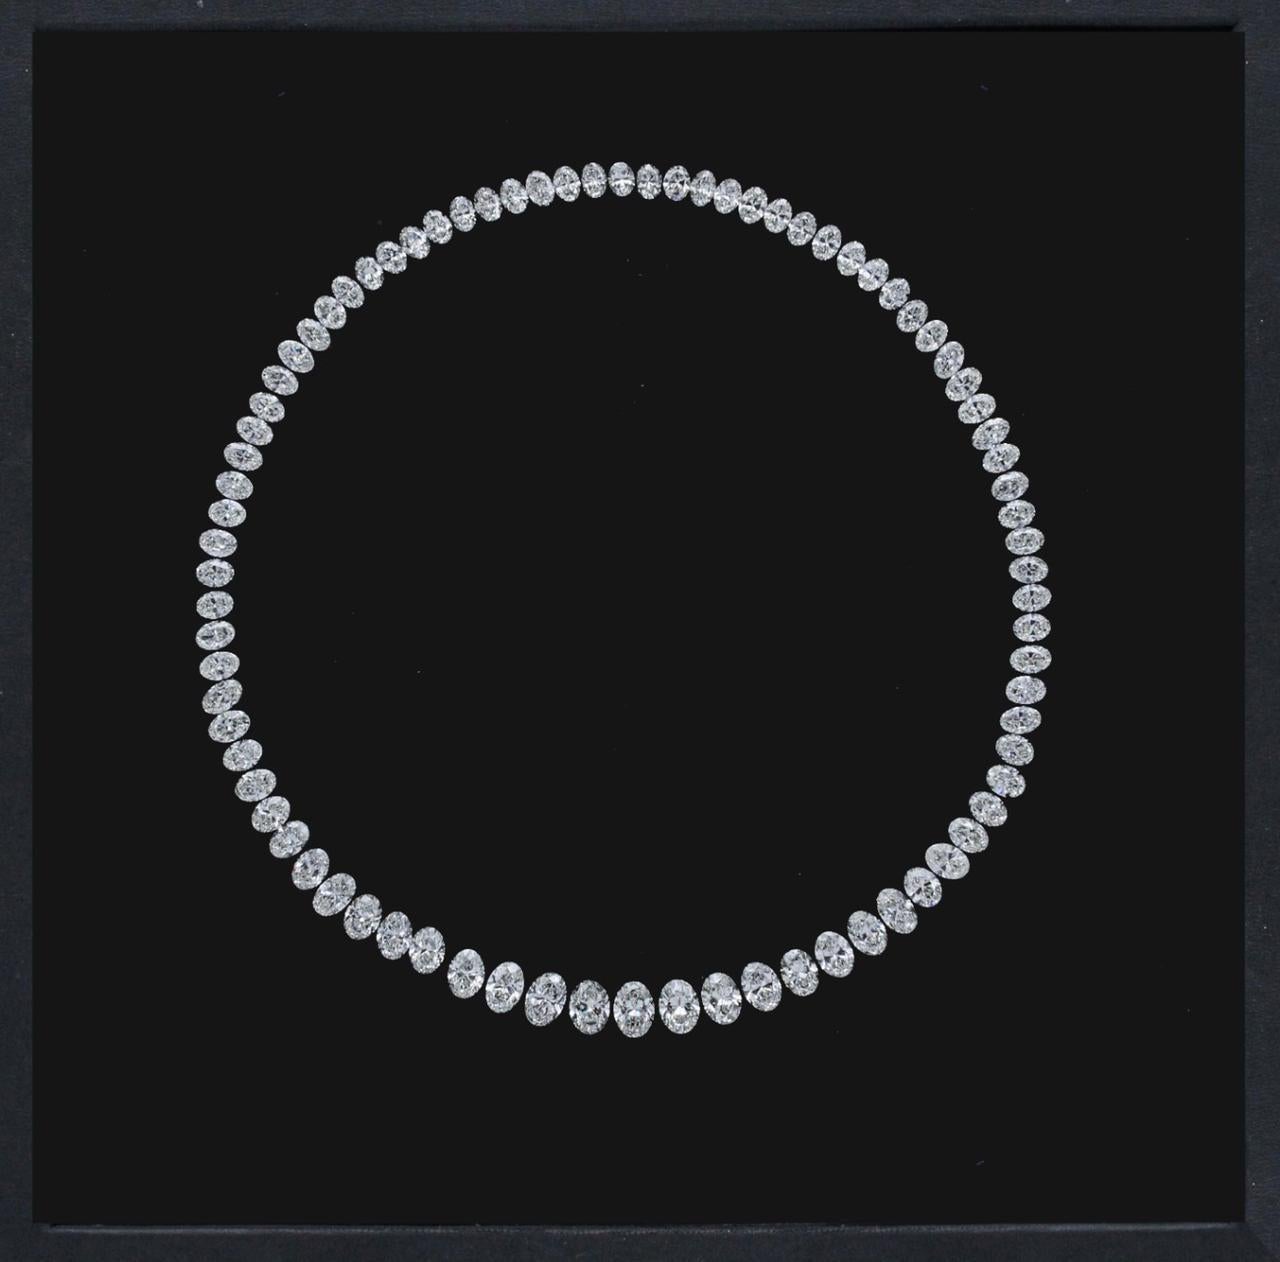 Aus dem Tresor von Emilio Jewelry New York,
Lassen Sie sich von Emilio Jewelry Ihr Traumcollier kreieren, genau so, wie es Ihr Herz begehrt! Eine spektakuläre Anordnung natürlicher, Gia-zertifizierter ovaler Diamanten von 1,06 ct bis hinunter zu